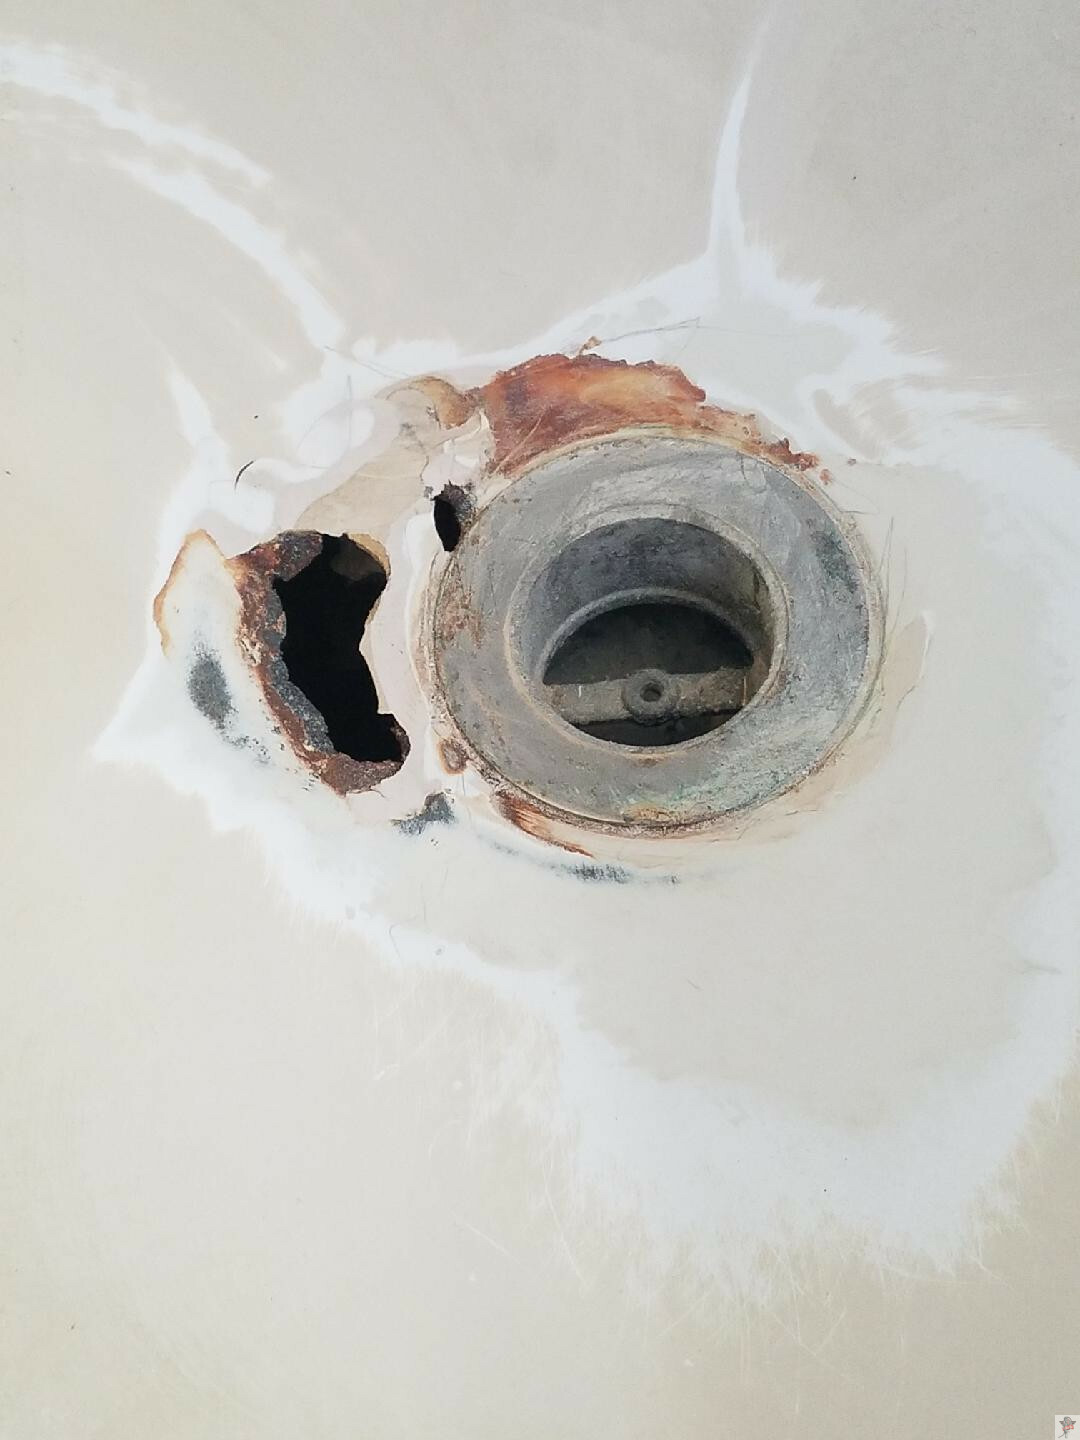 Tub Refinishing Repair Rust More, Repair Rust In Bathtub